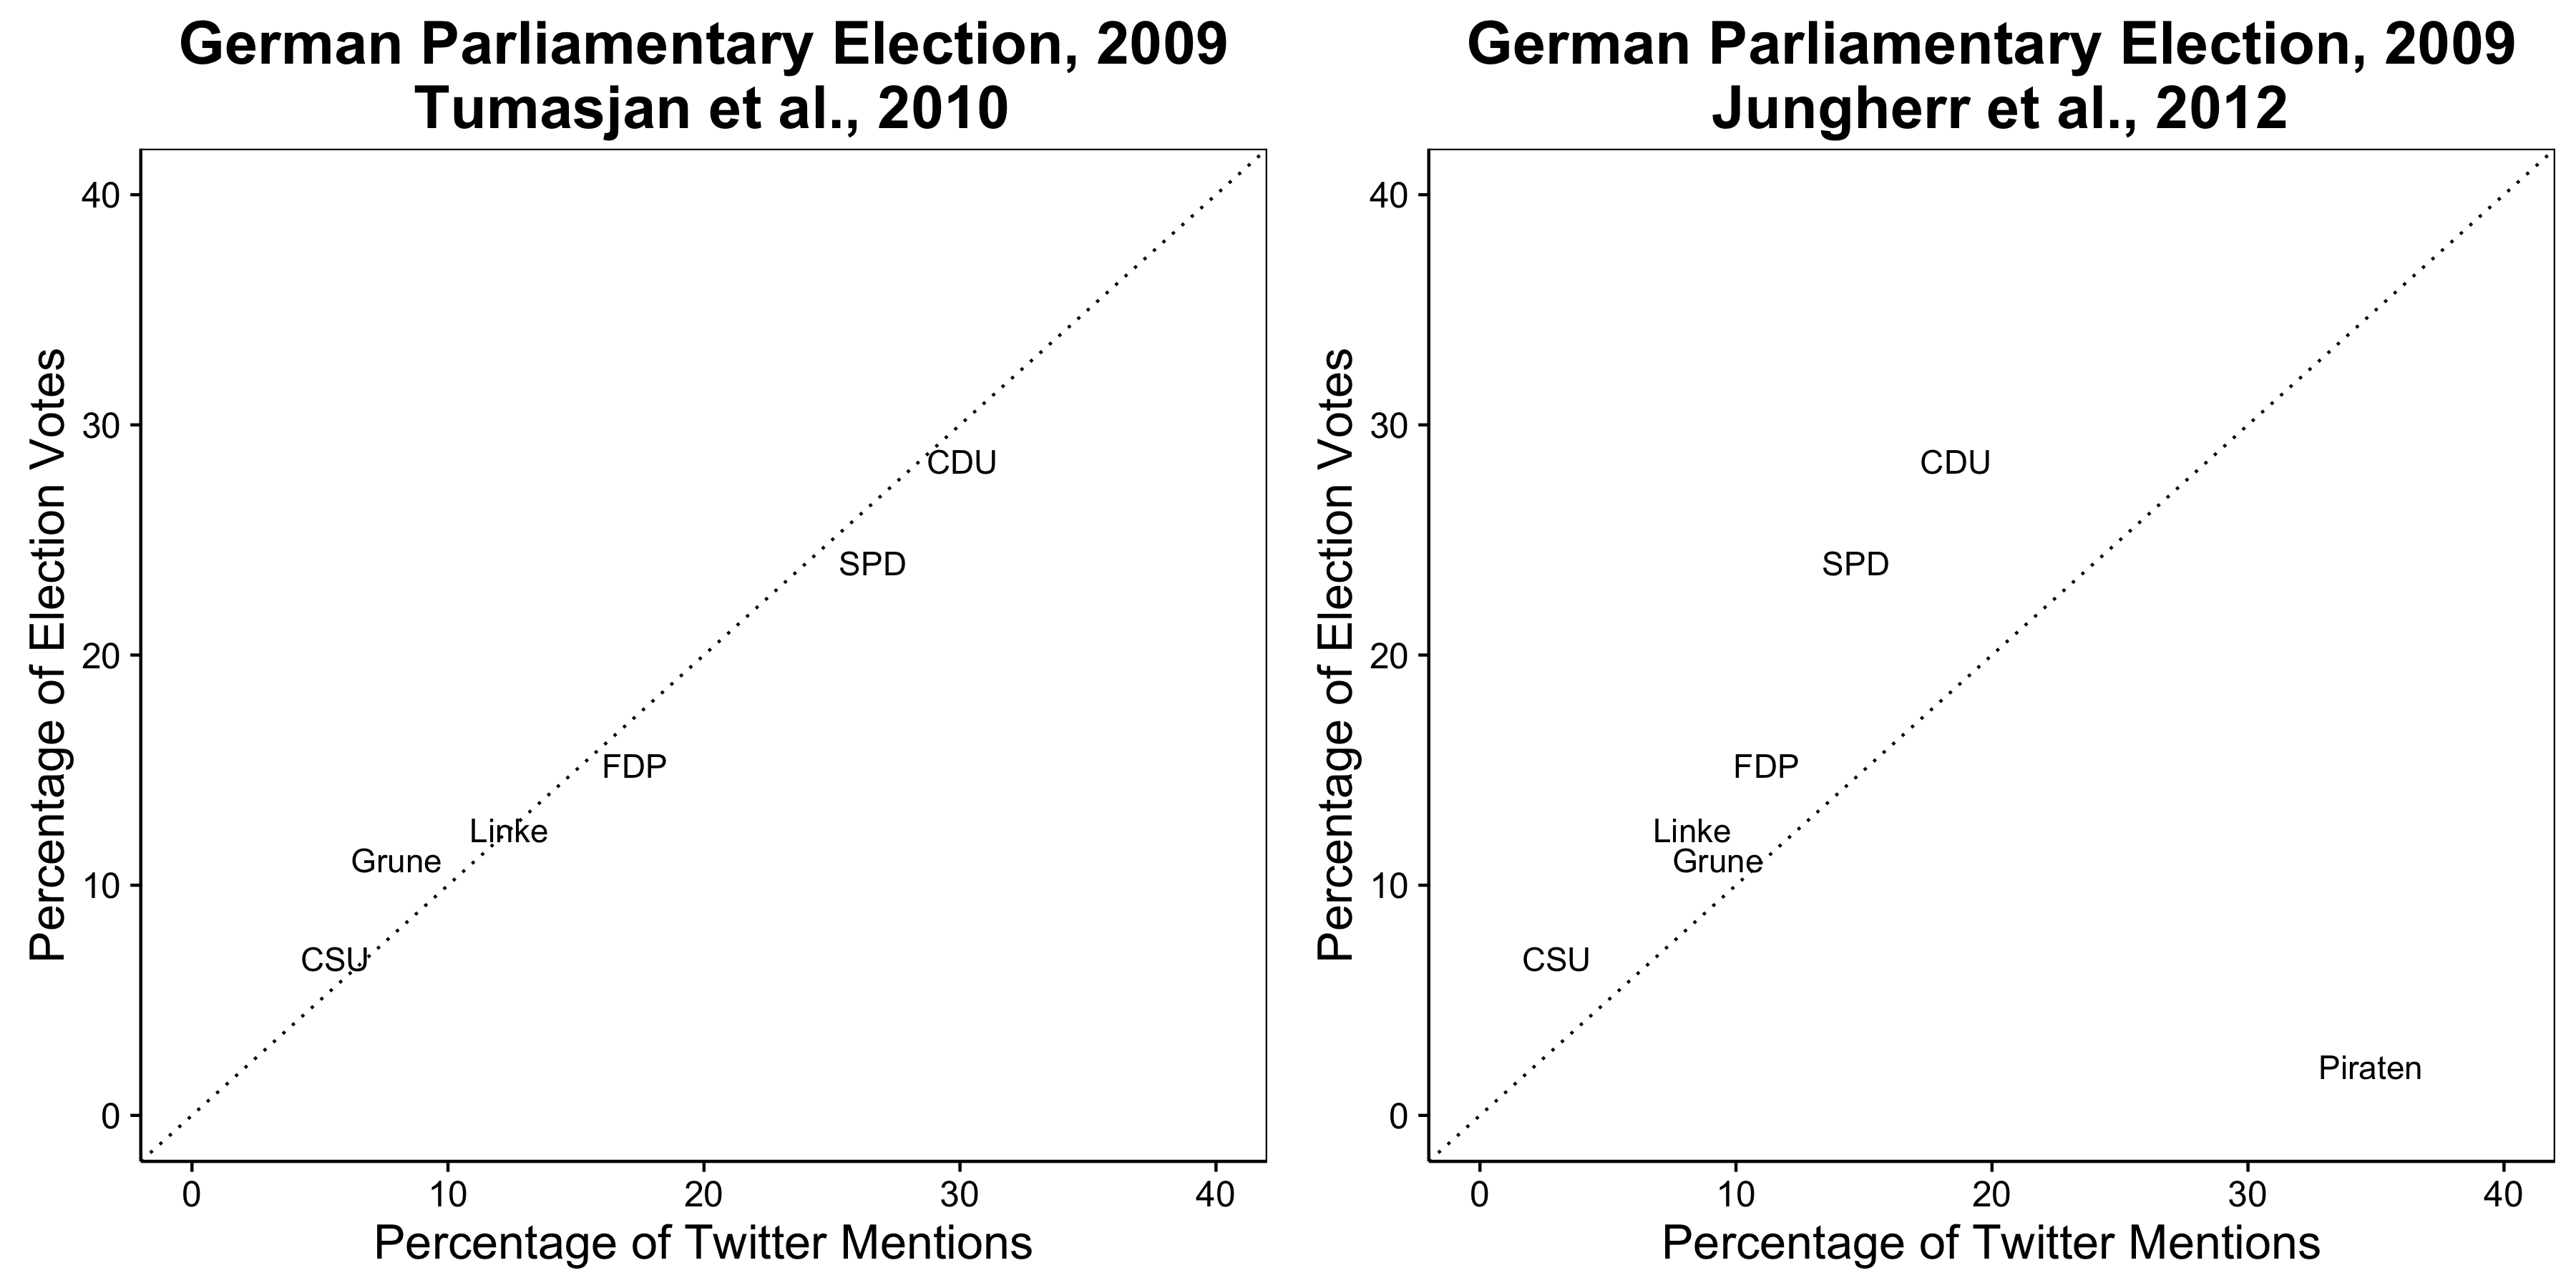 Σχήμα 2.9: Twitter αναφέρει φαίνεται να προβλέψουμε τα αποτελέσματα των εκλογών στη Γερμανία το 2009 (Tumasjan et al 2010)., Αλλά το αποτέλεσμα αυτό αποδεικνύεται να εξαρτάται από ορισμένες αυθαίρετες και αδικαιολόγητες επιλογές (Jungherr, Jürgens, και Schoen 2012).